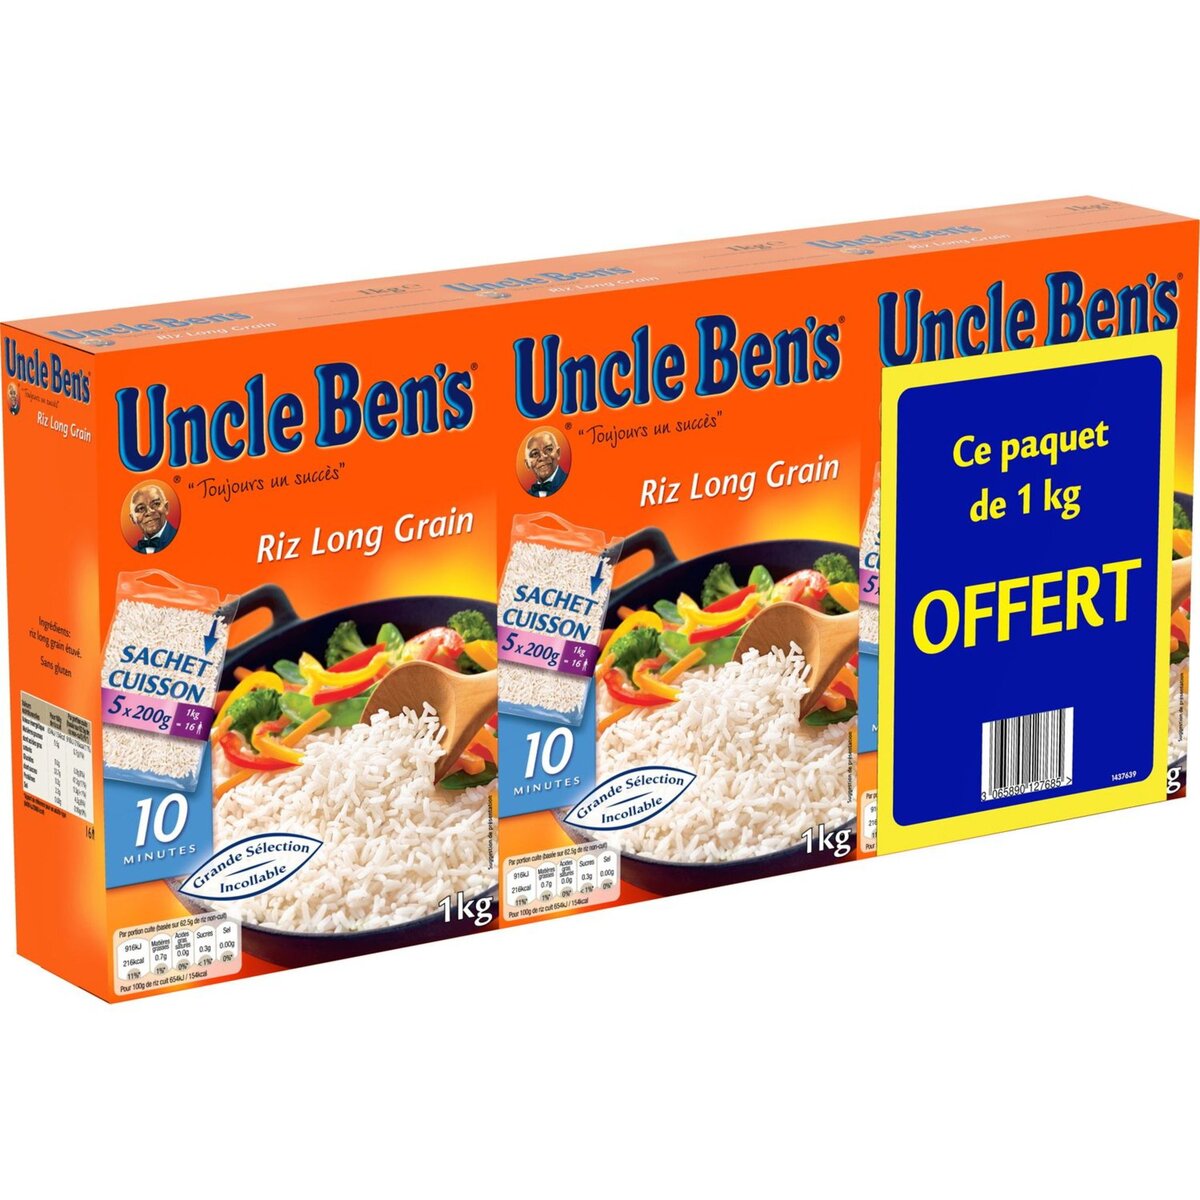 BEN'S ORIGINAL Riz long grain sachet cuisson 3 x 5 sachets 3kg dont 1 offert